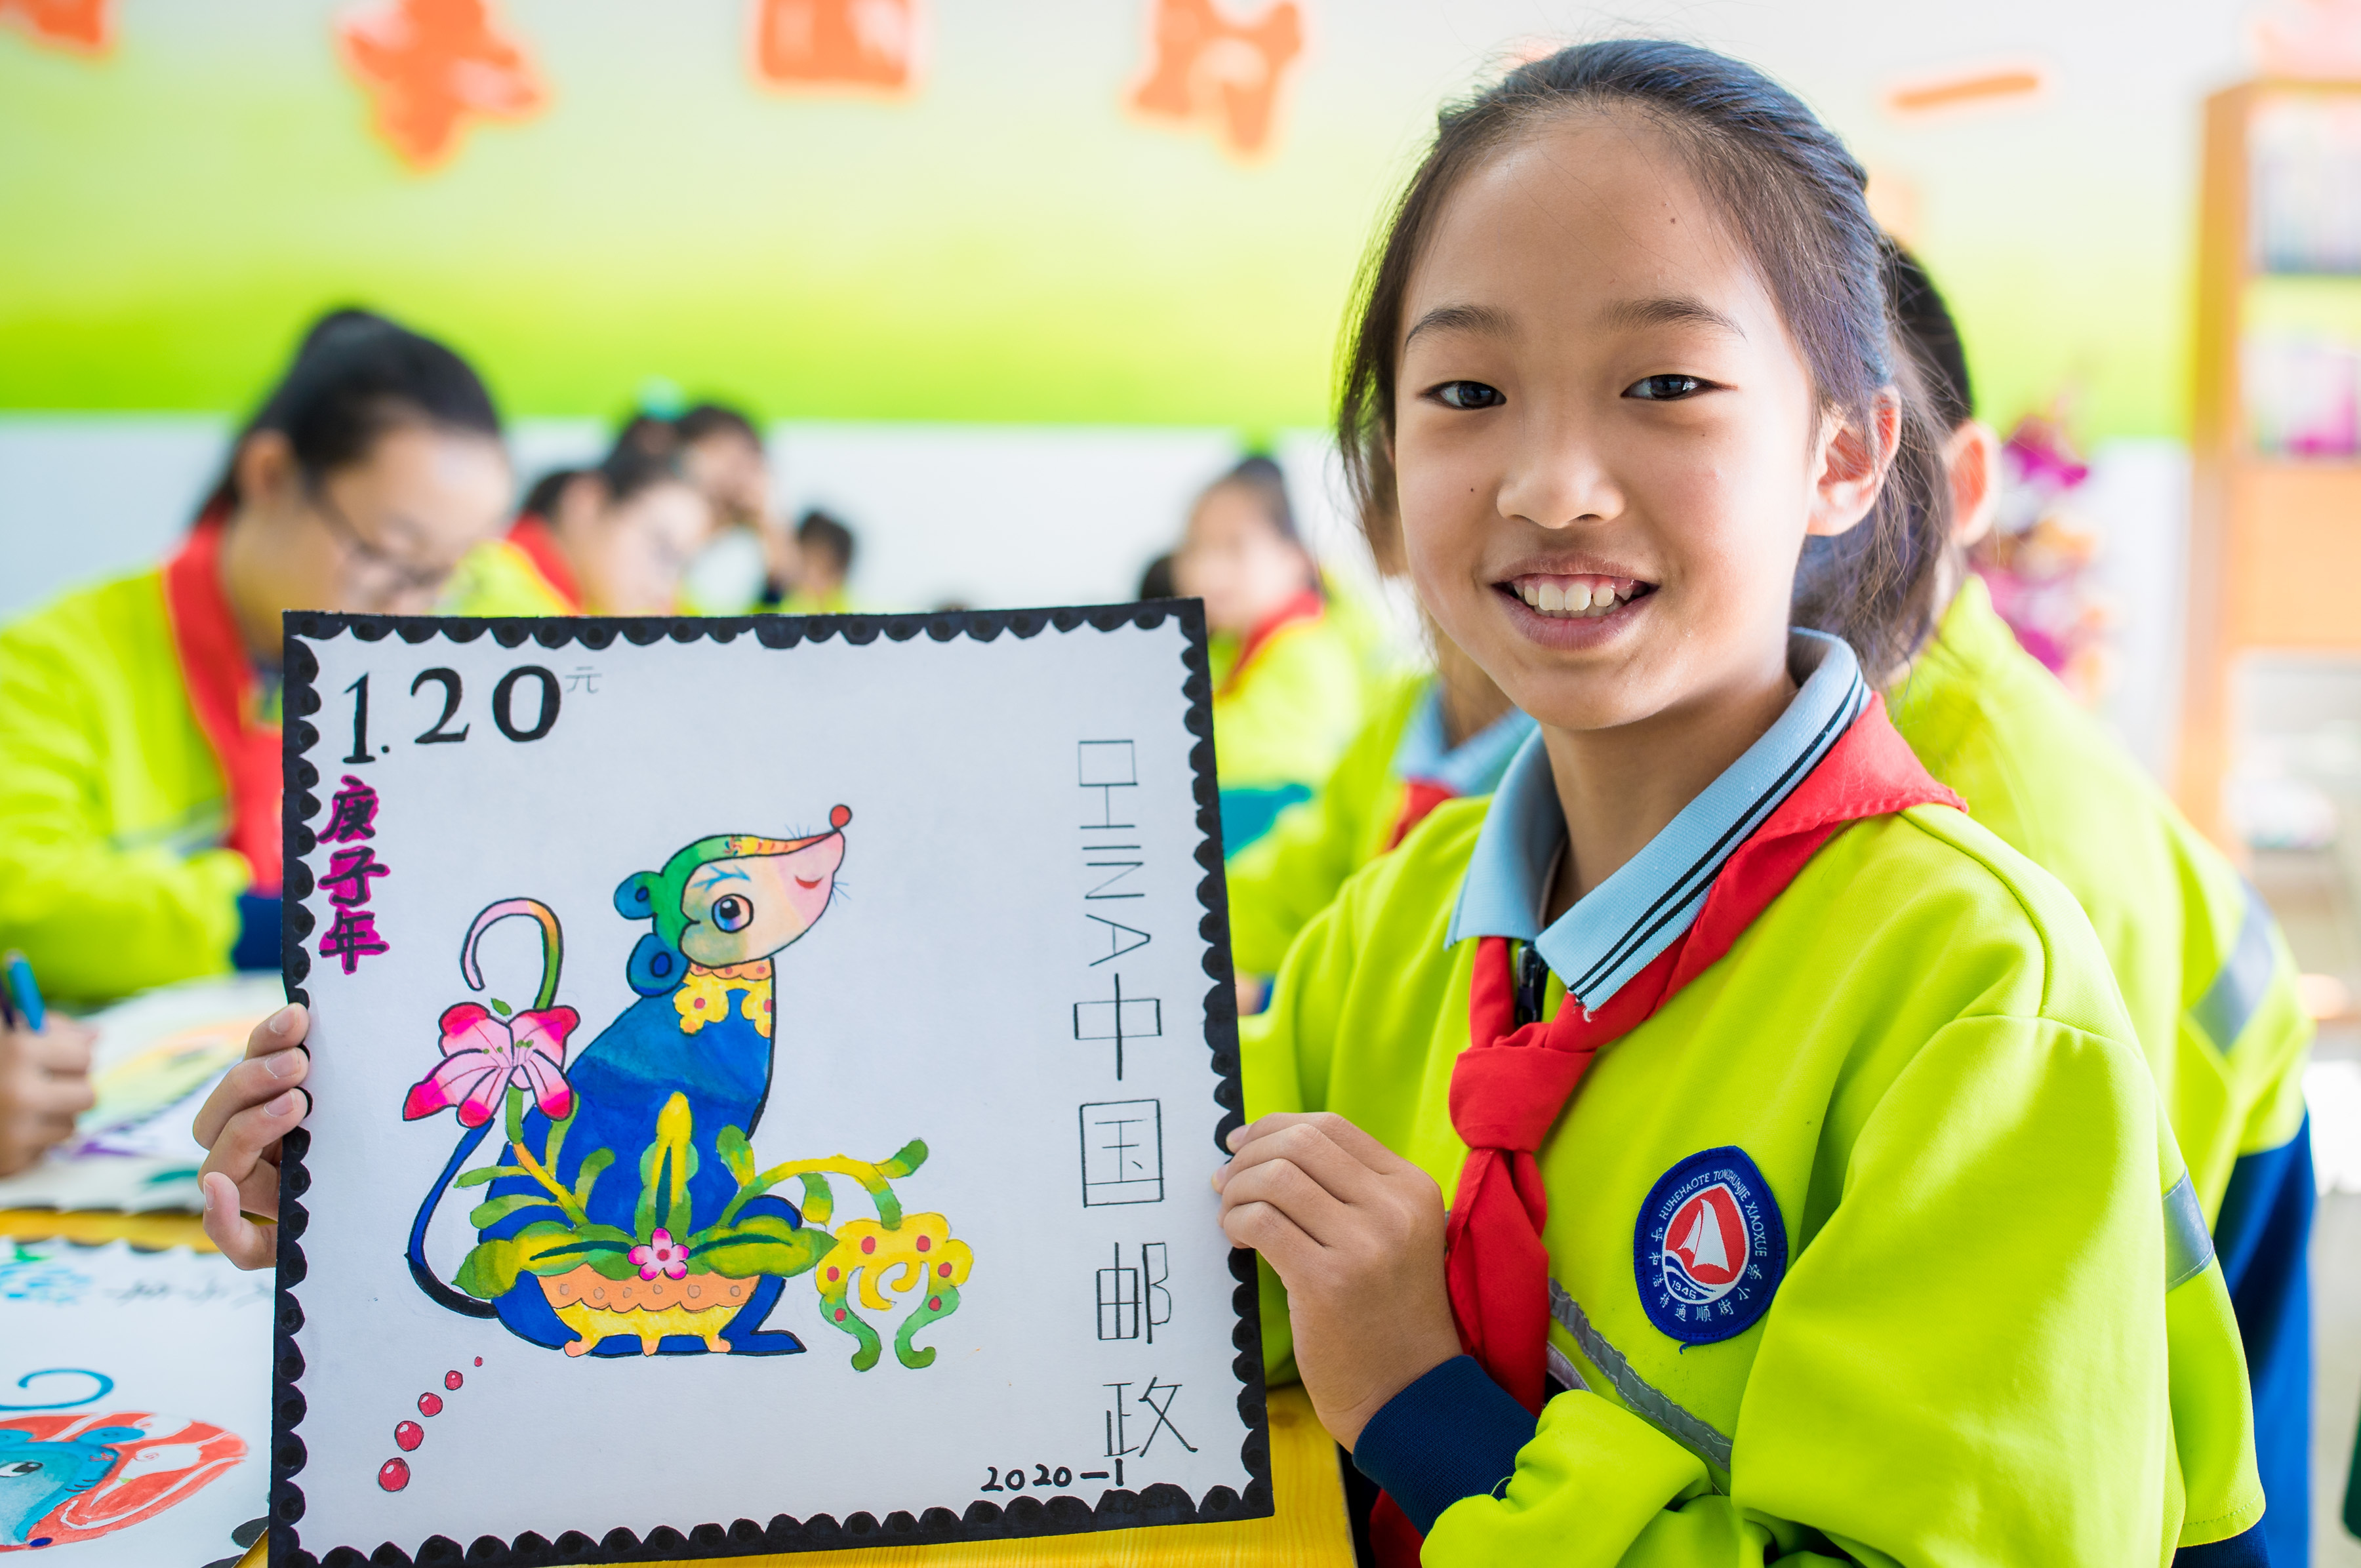 通顺街小学:彩绘生肖邮票 迎接"世界邮政日"